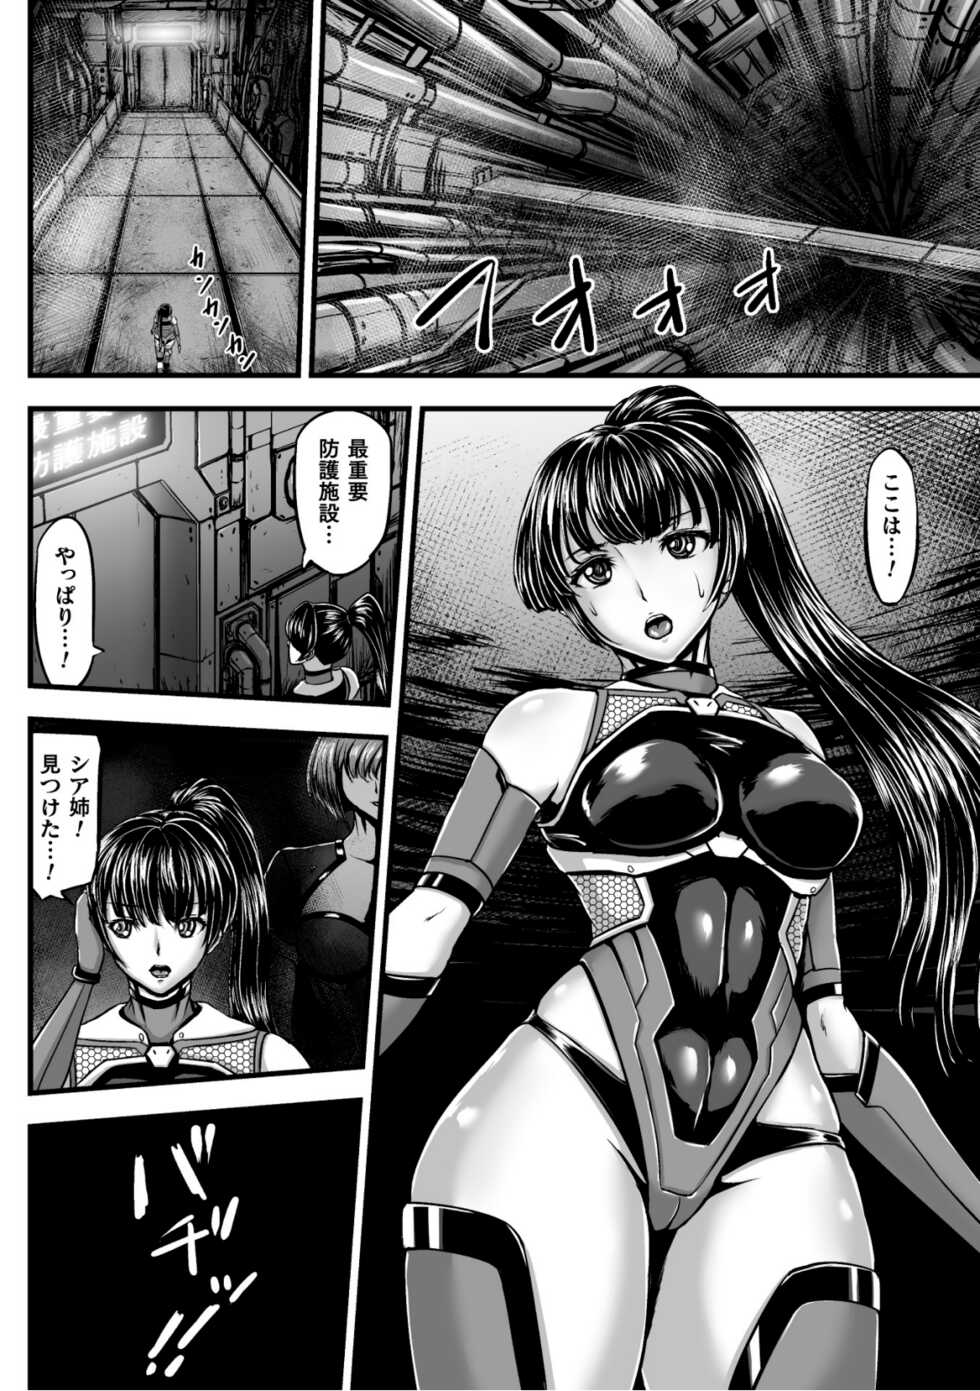 [yuyu] Kangoku Tentacle Battleship Episode 1 - Page 8